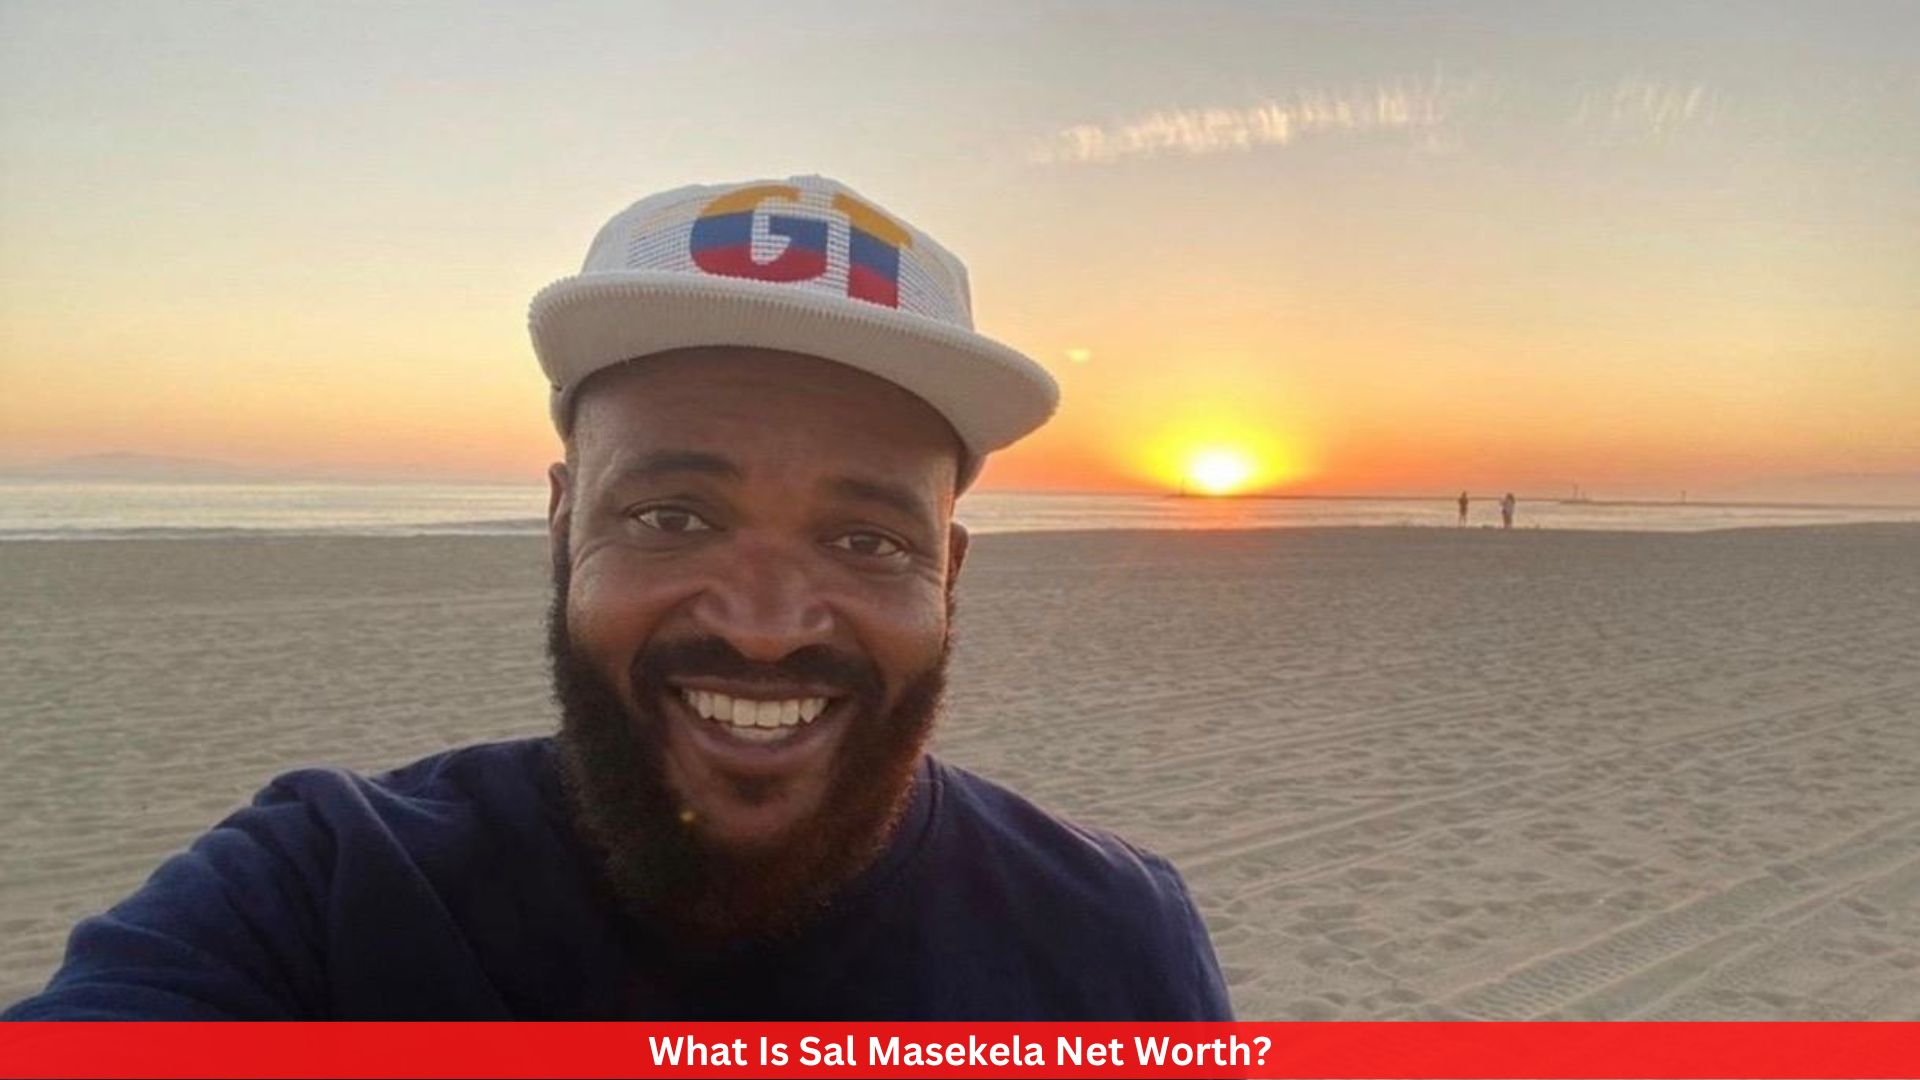 What Is Sal Masekela Net Worth?